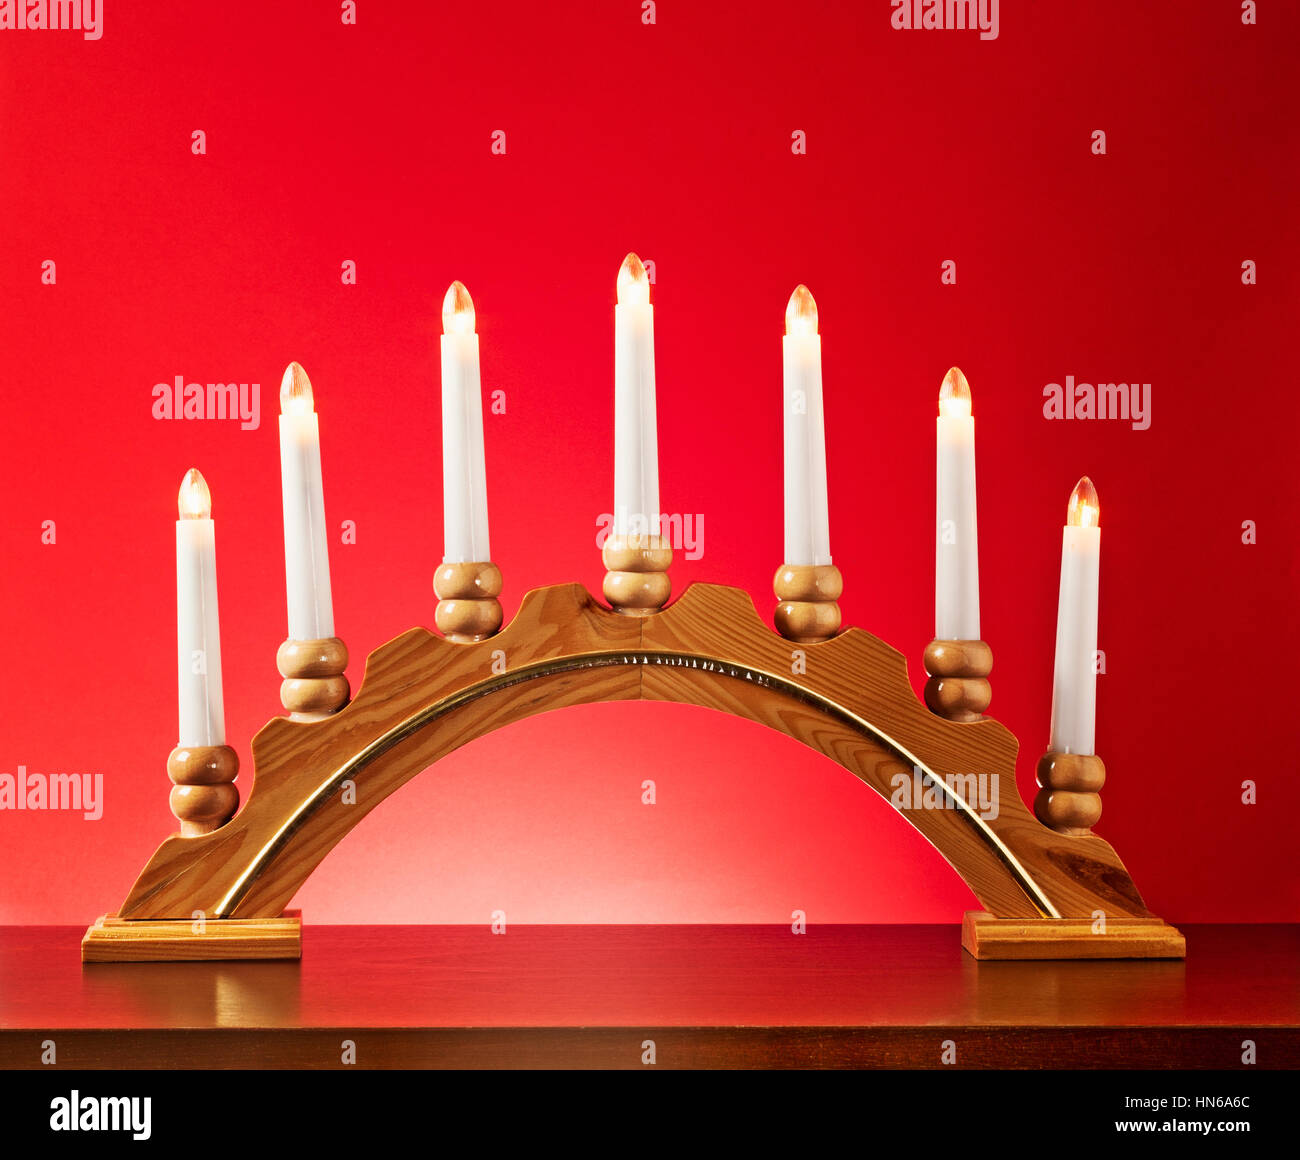 Weihnachten-Holz-Kerze-Halter mit Glühbirnen auf rotem Hintergrund, Beleuchtung und Dekoration für die Adventszeit Stockfoto